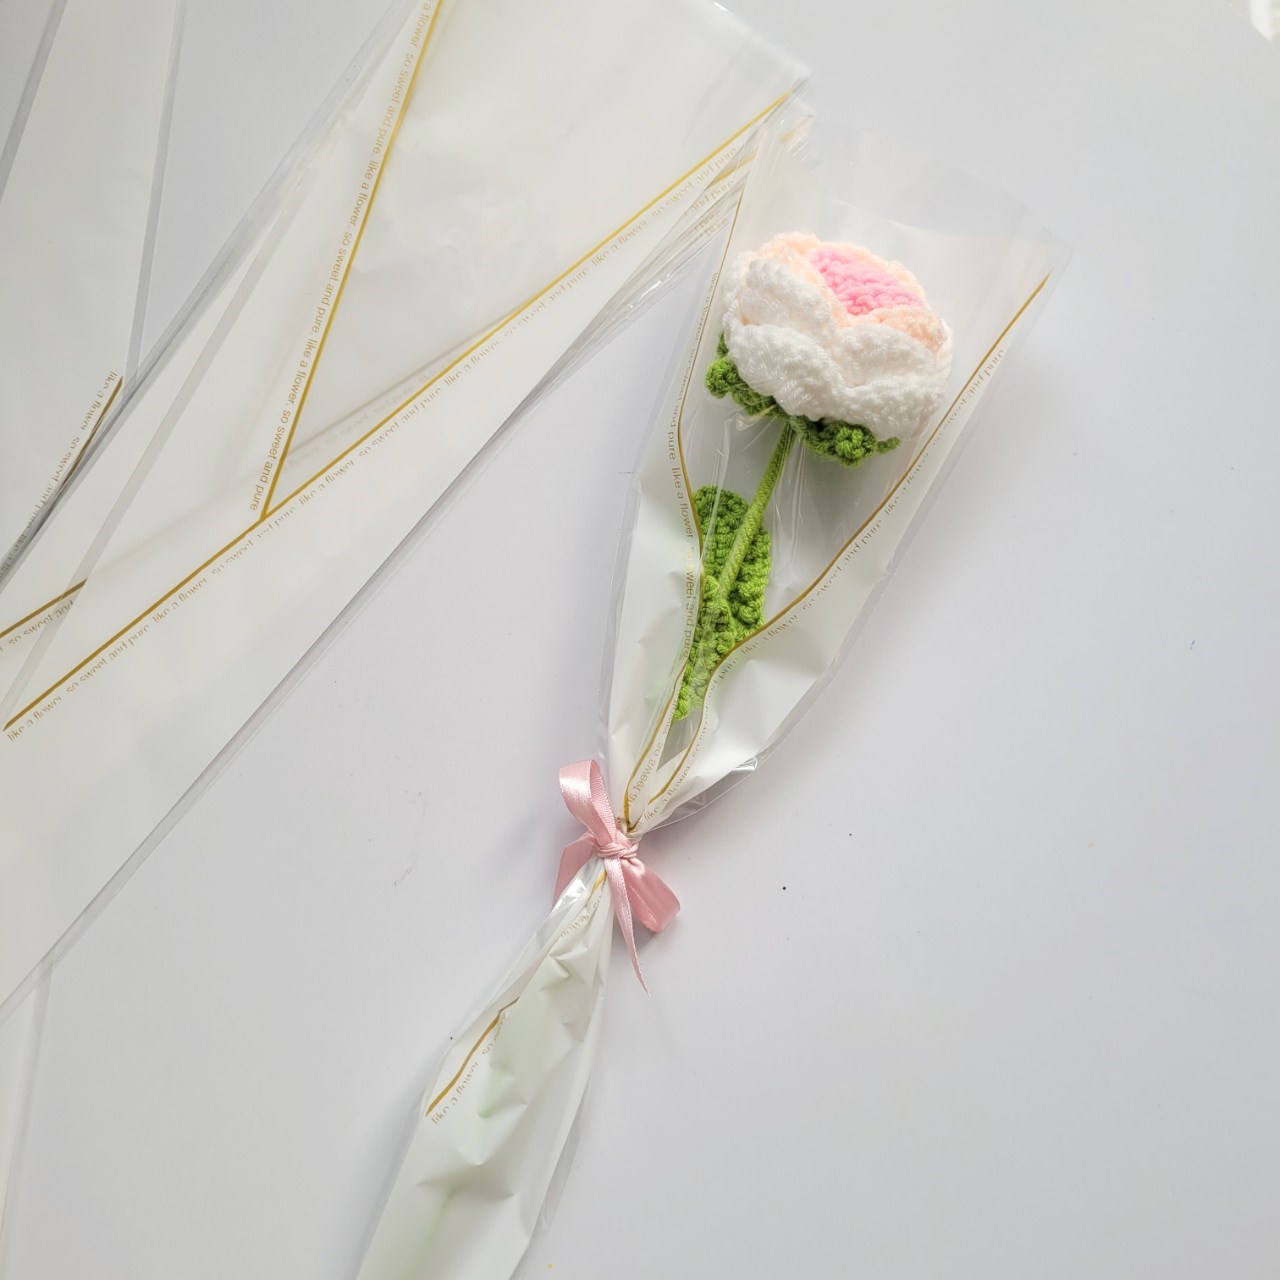 Set quà tặng 1 nhánh hoa bằng len móc thủ công handmade 